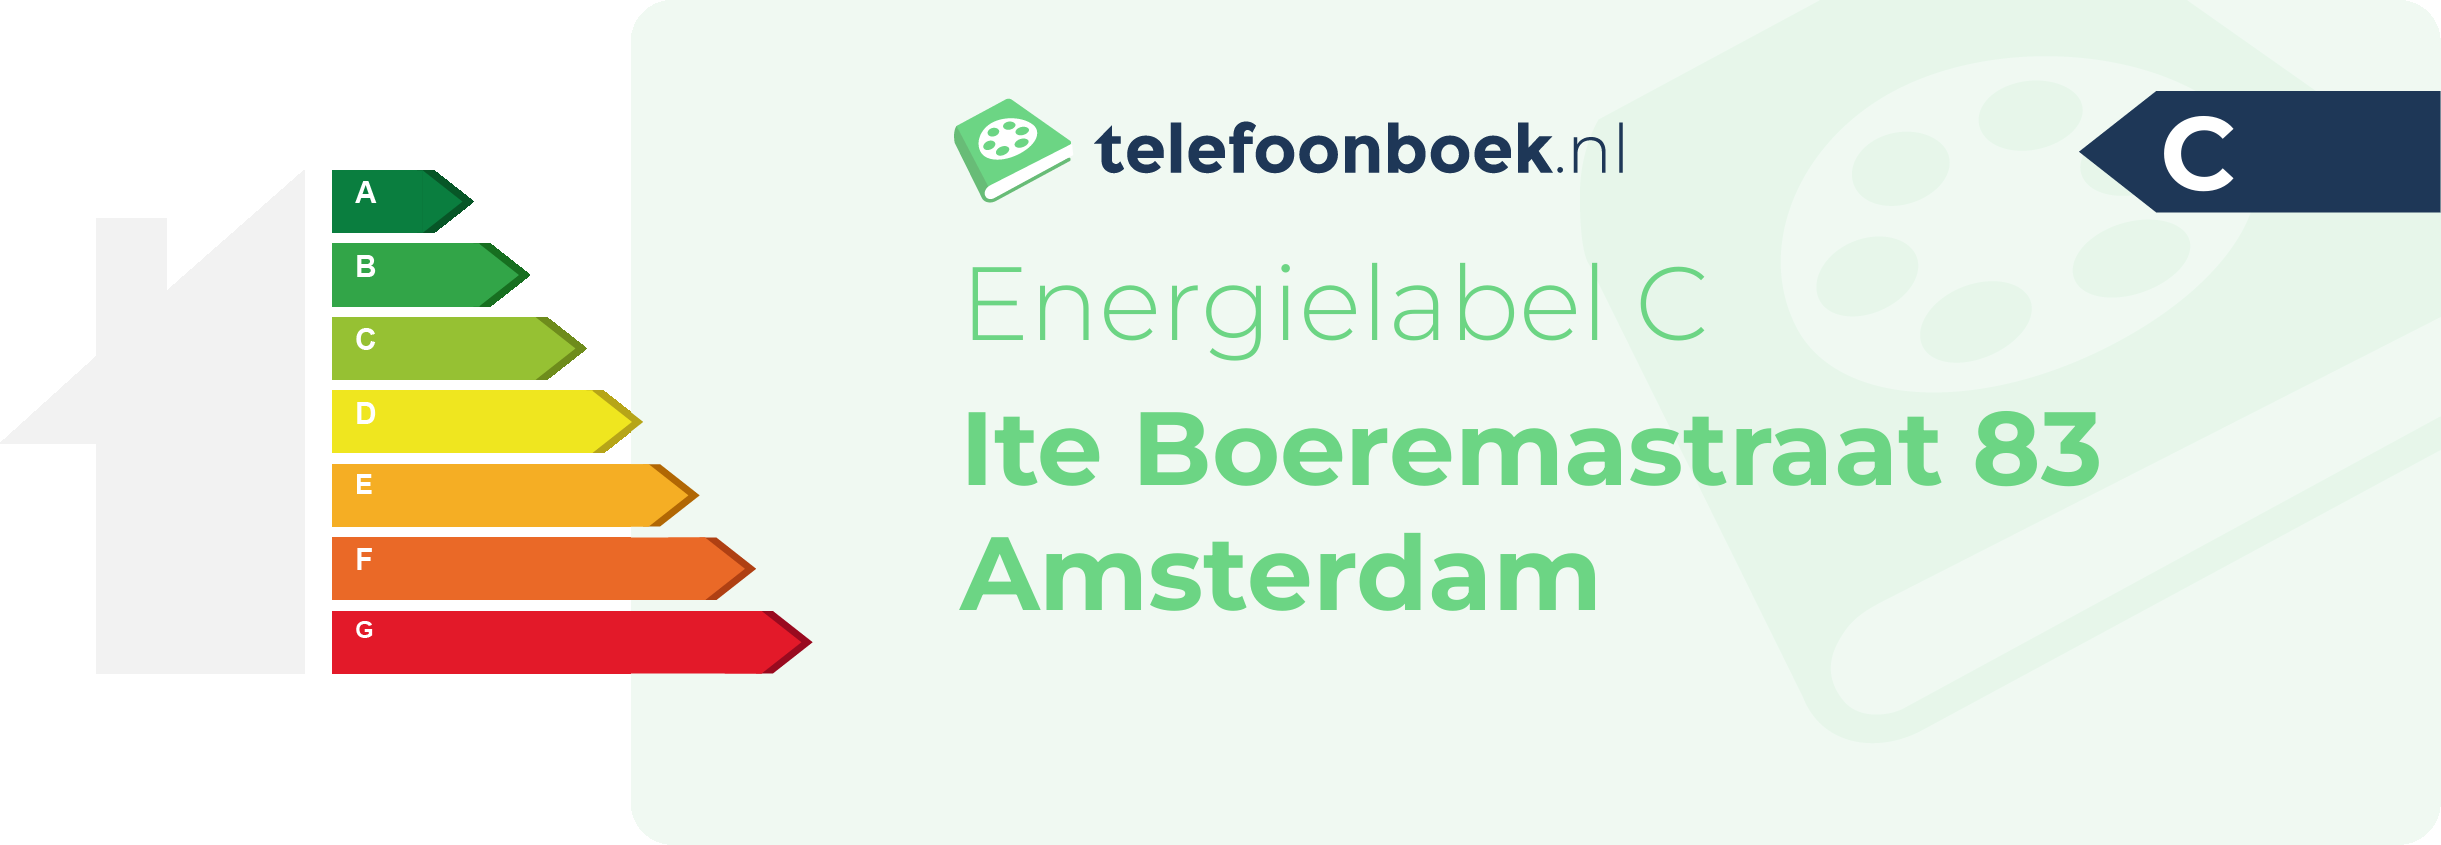 Energielabel Ite Boeremastraat 83 Amsterdam